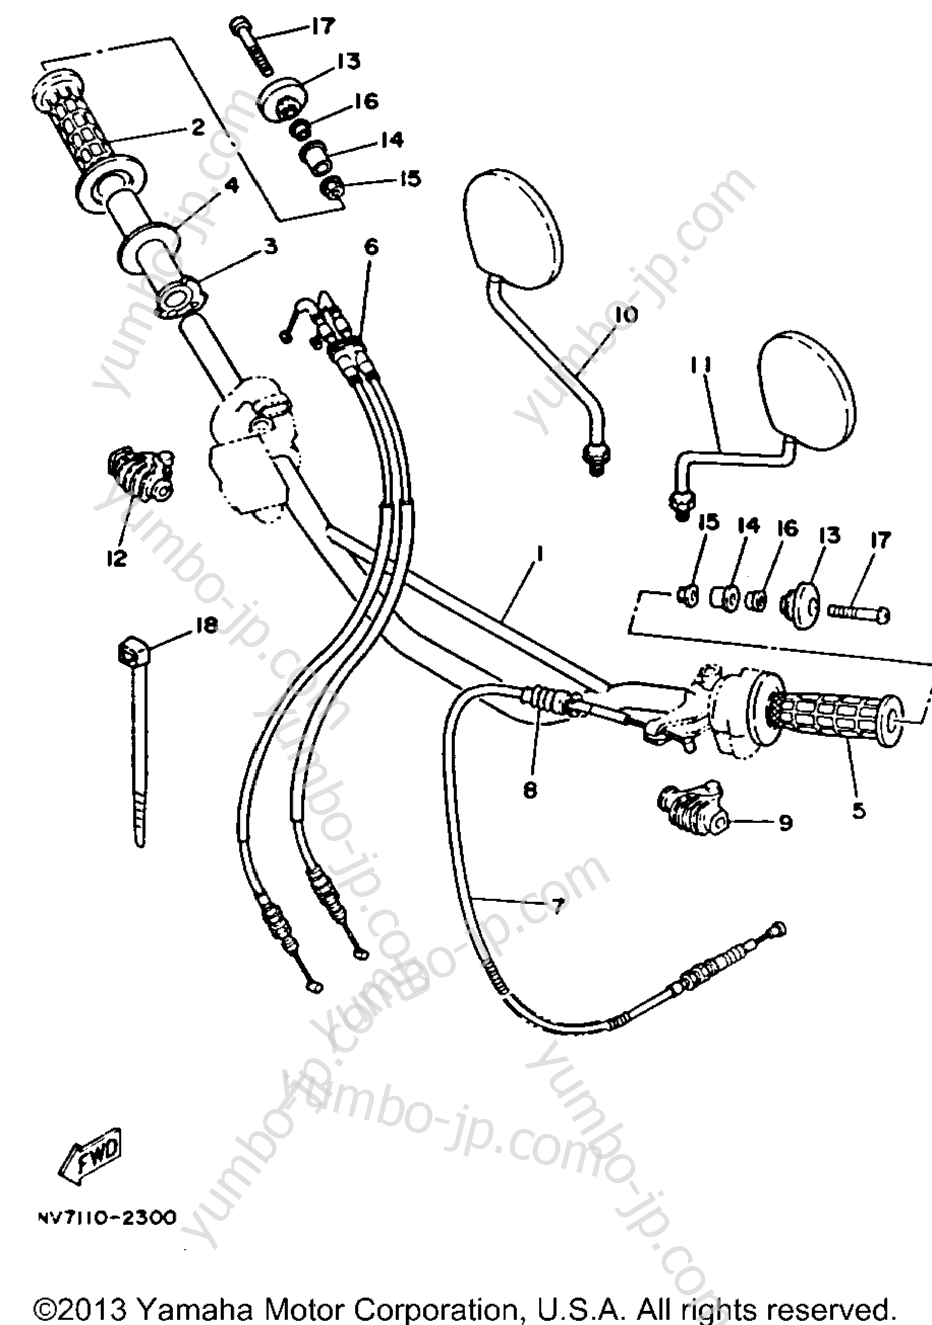 Handlebar - Cable for motorcycles YAMAHA XT350D 1992 year